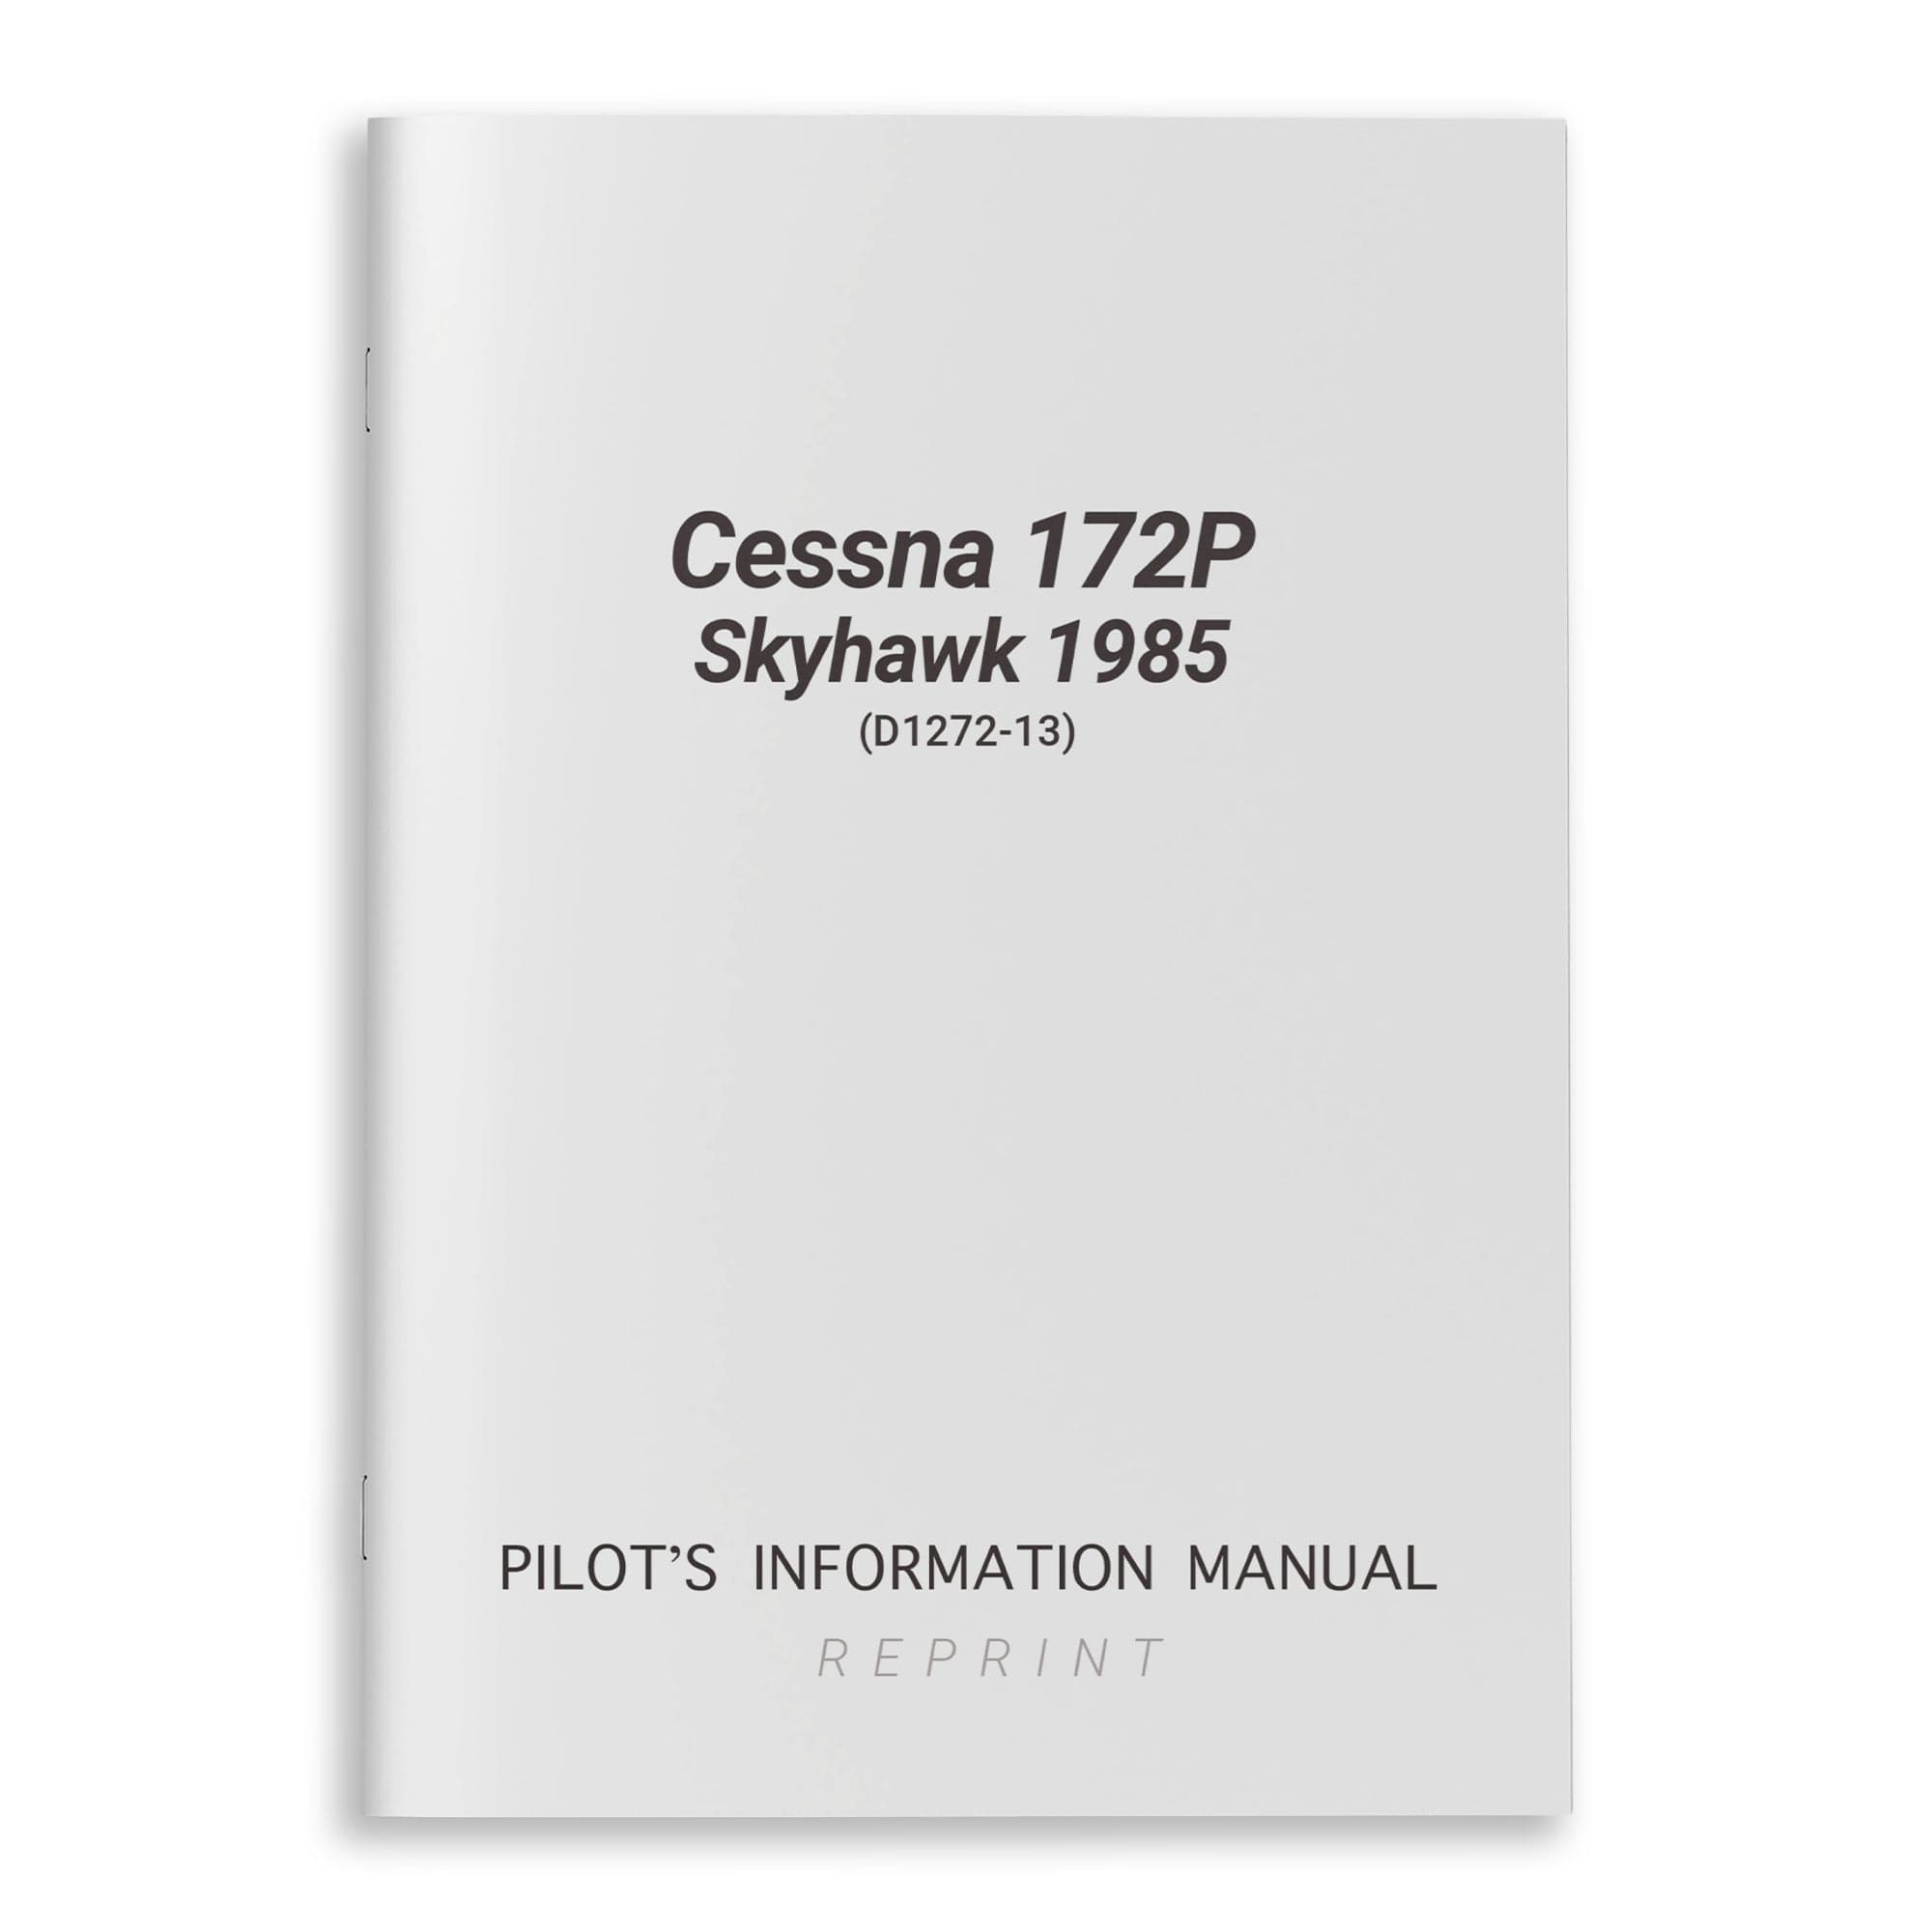 Cessna 172P Skyhawk 1985 Pilot's Information Manual (D1272-13) - PilotMall.com